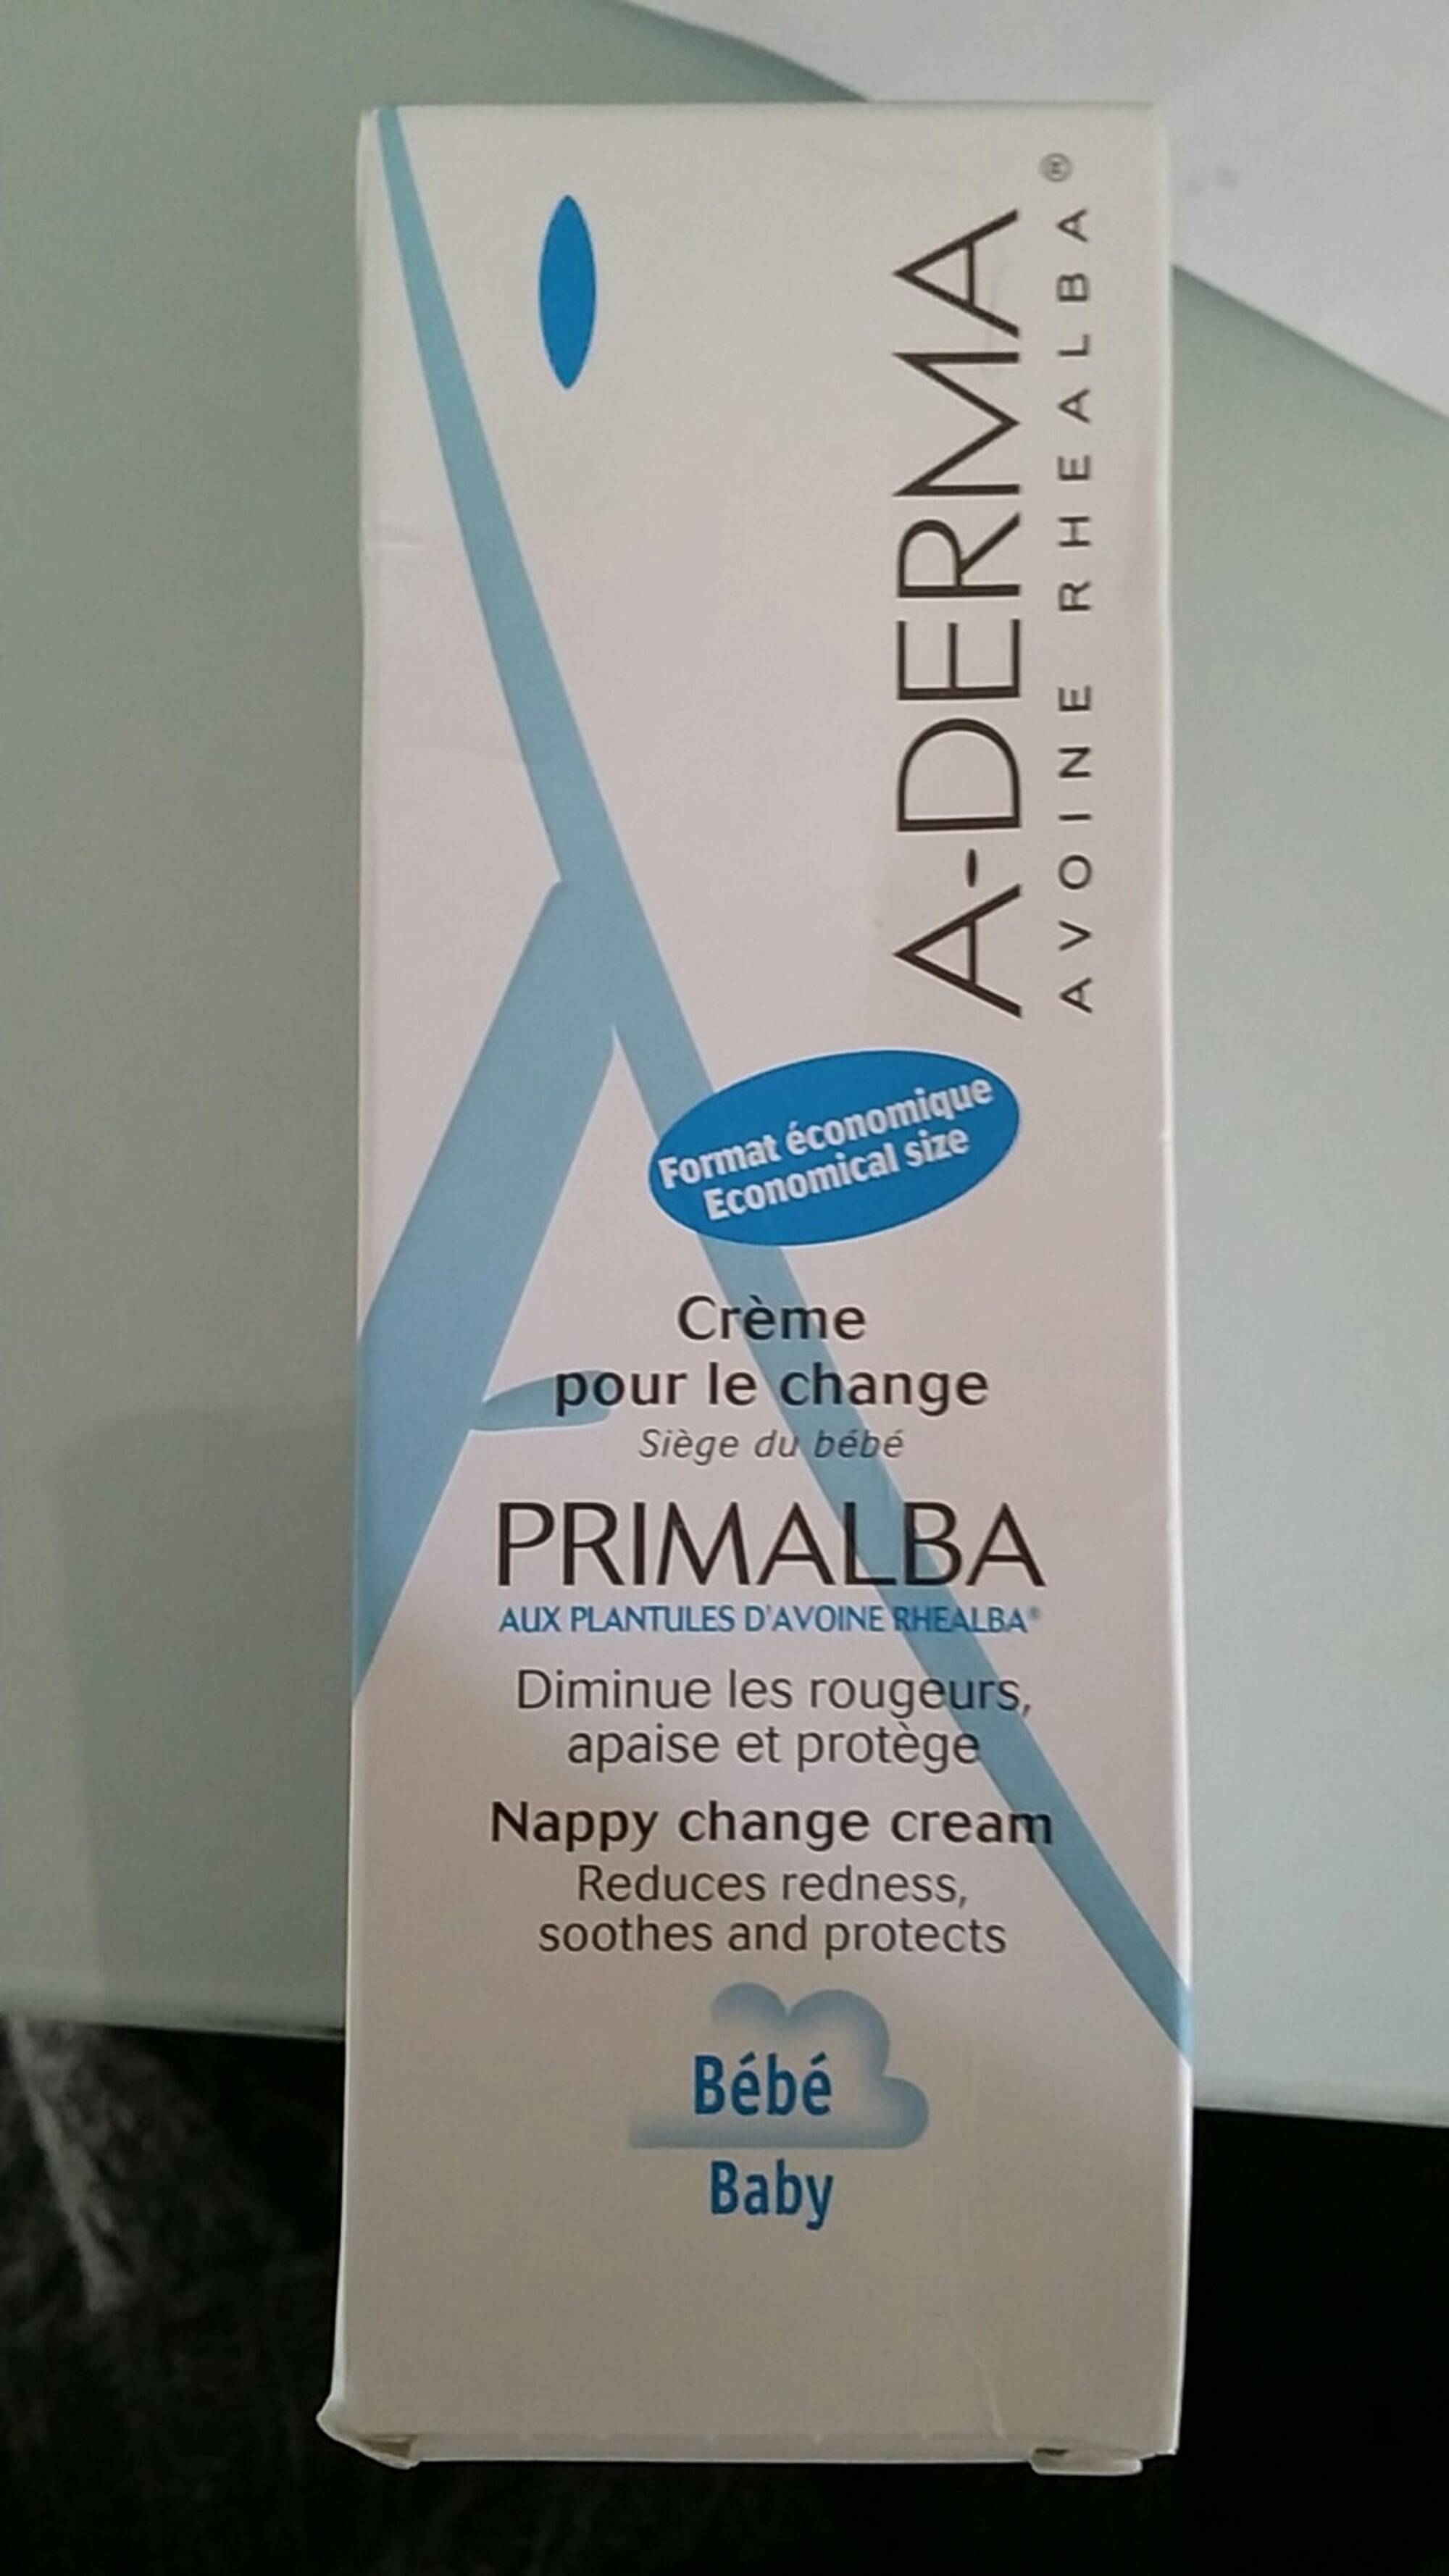 A-DERMA - Primalba - Crème pour le change